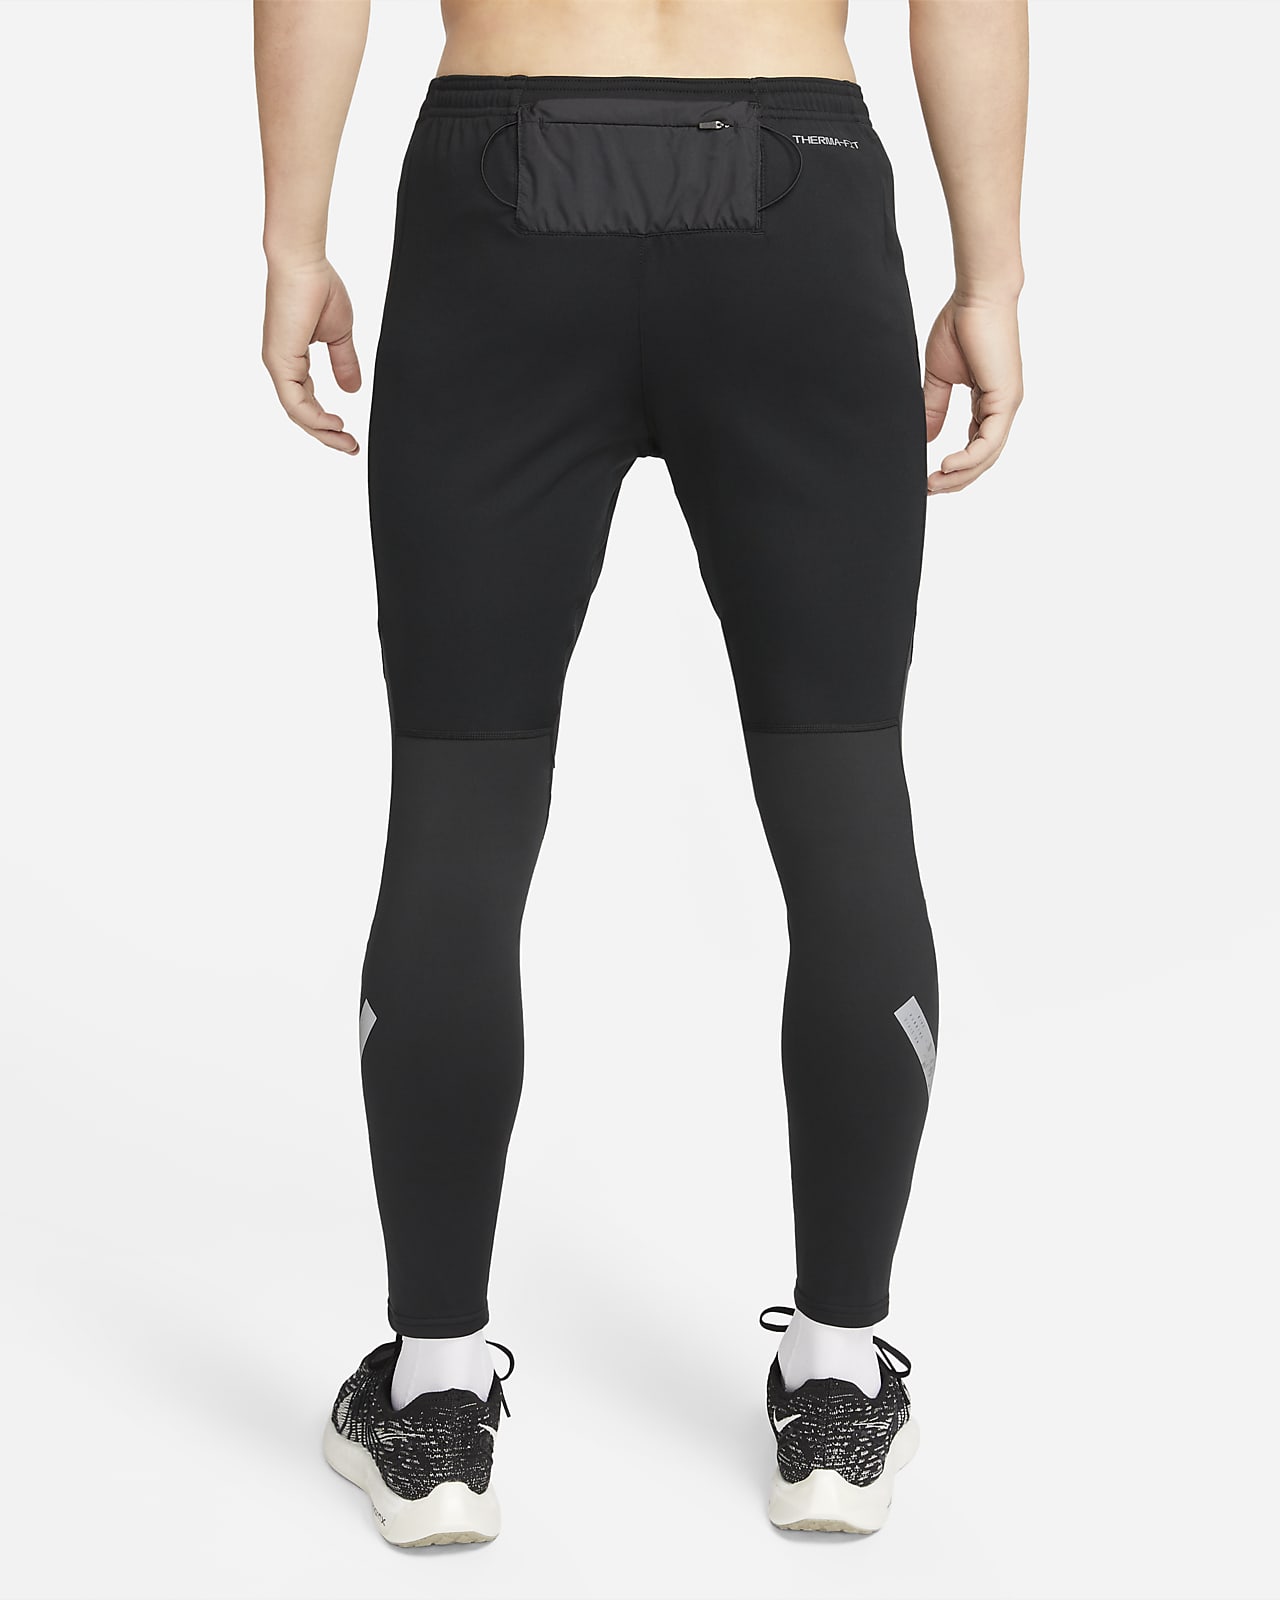 Mens ThermaFIT Pants  Tights Nikecom